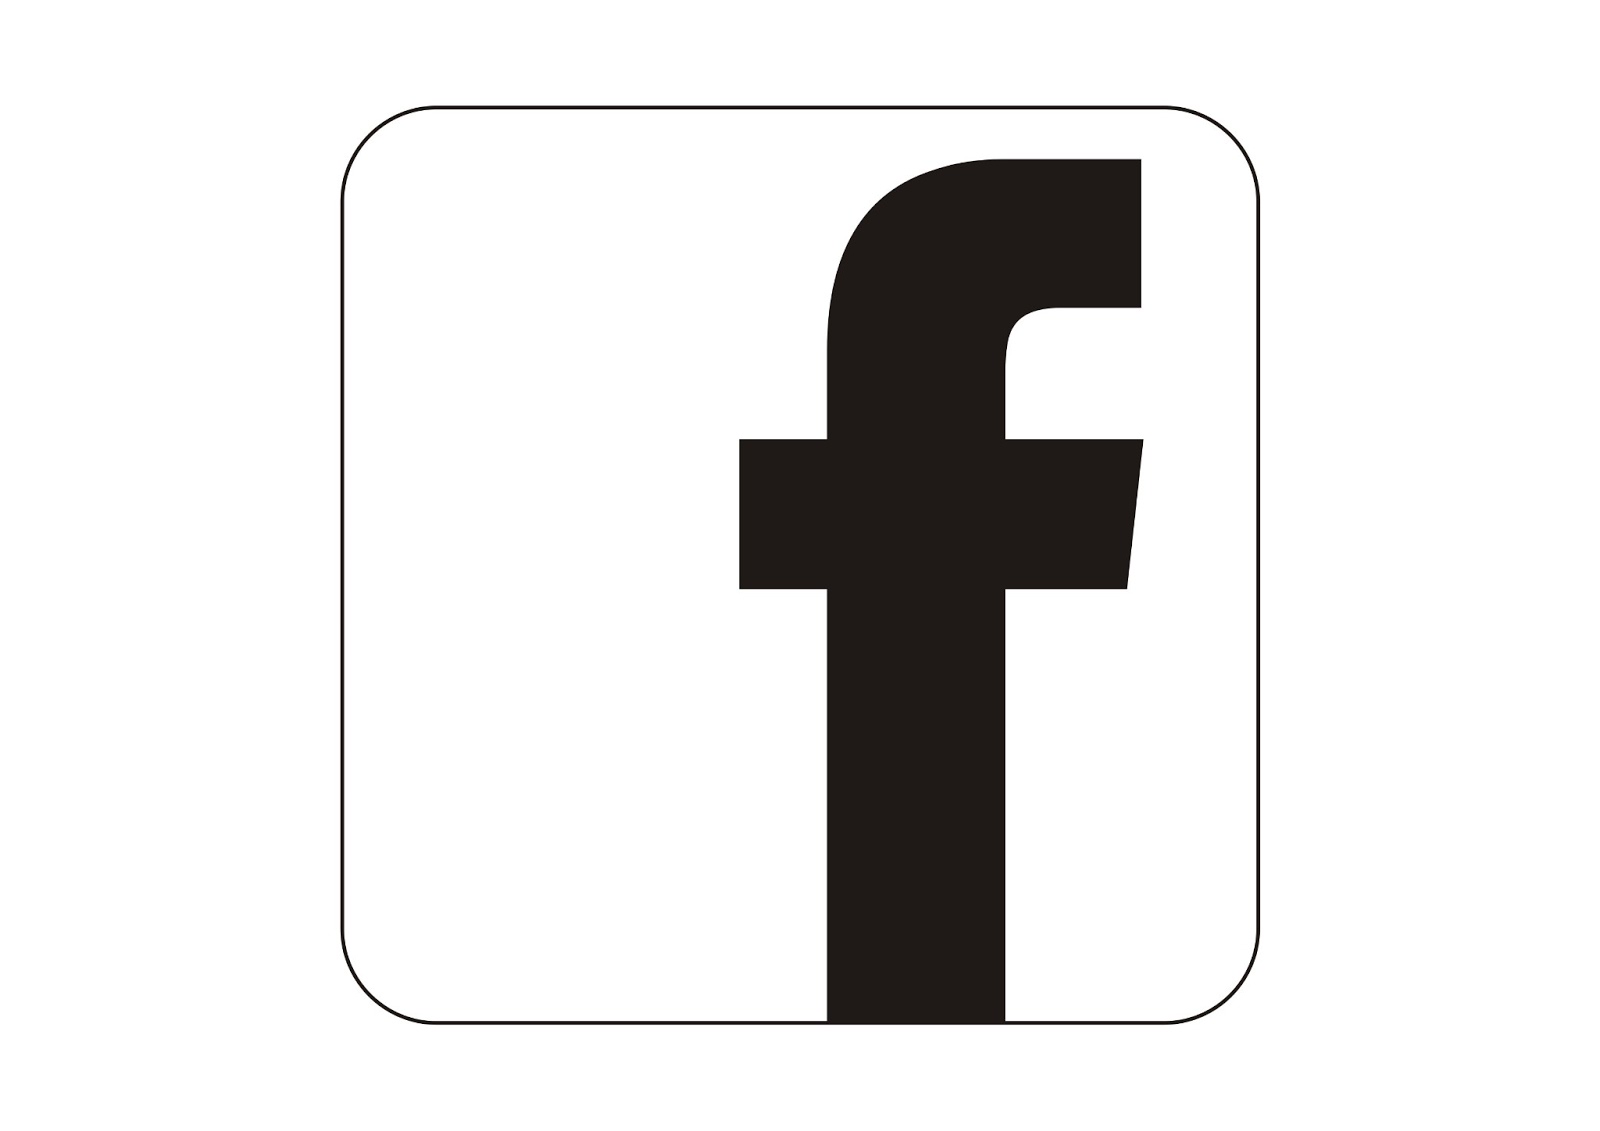 Seputar Desain: Cara membuat logo Facebook dengan menggunakan Corel Draw